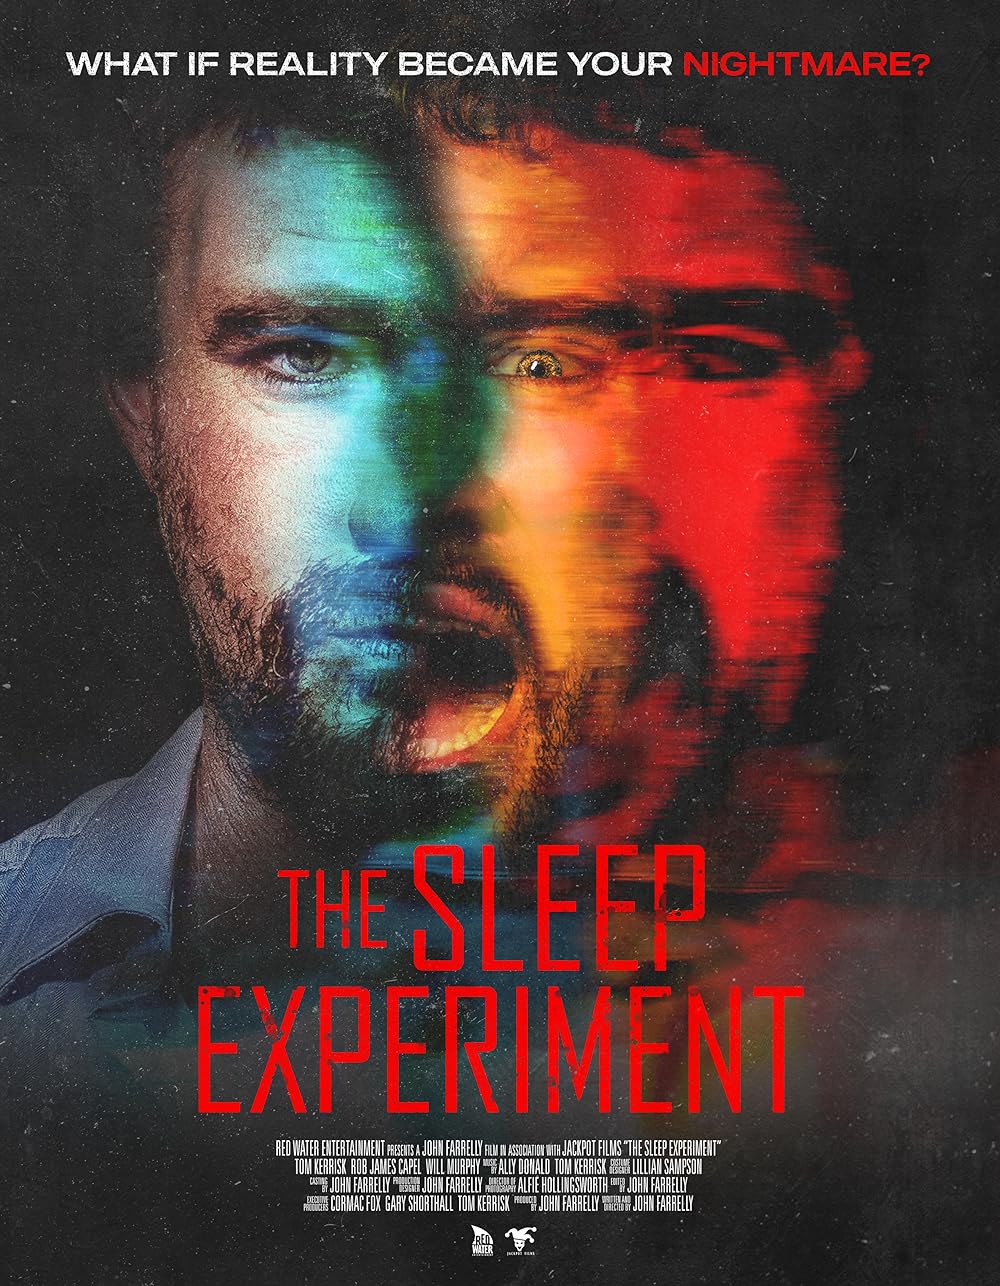 The Sleep Experiment (Movie Quiz)